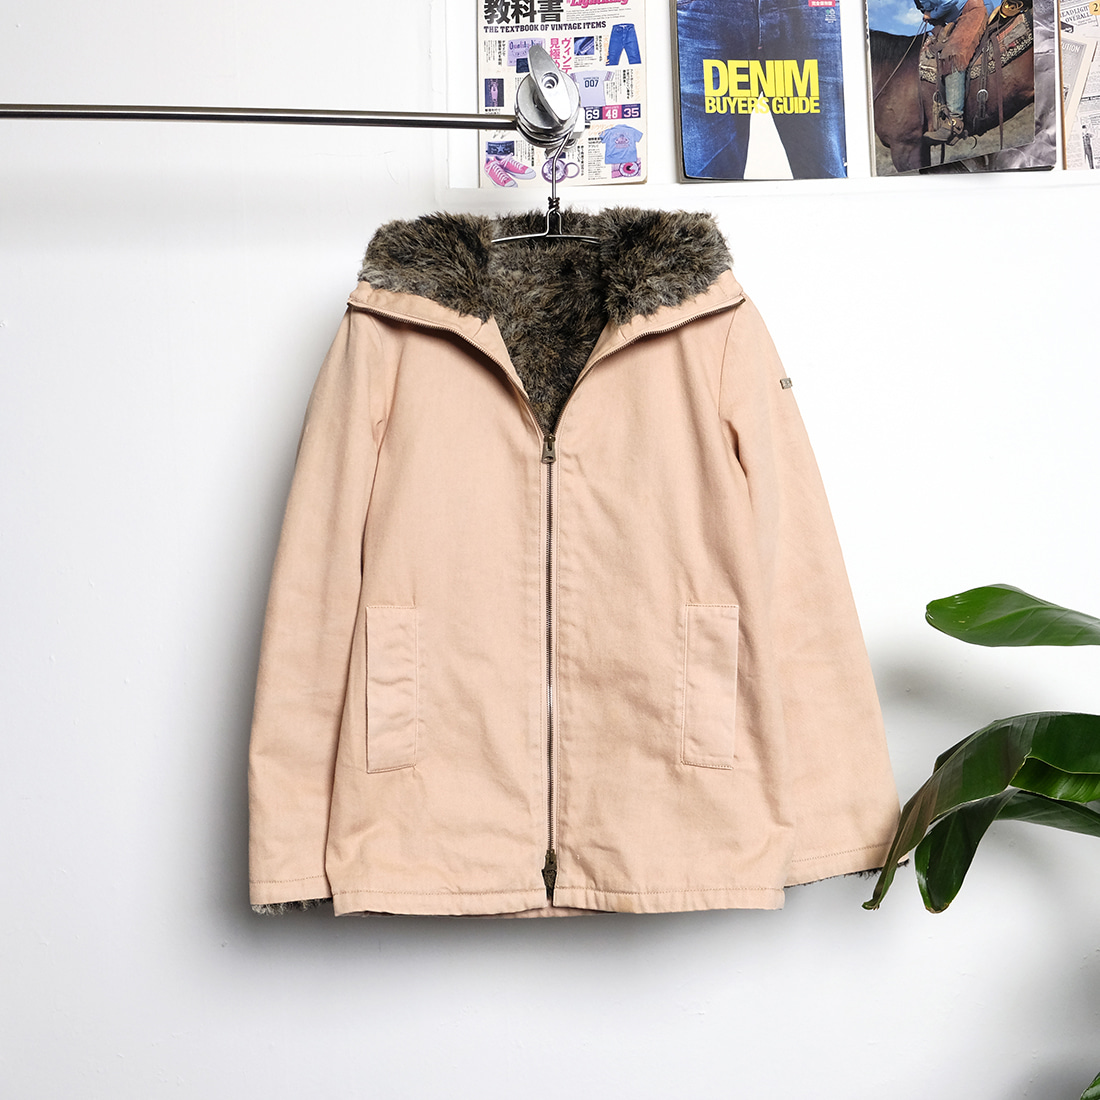 베이피 / Made in japan  Bapy by Bape fur lined warm jacket